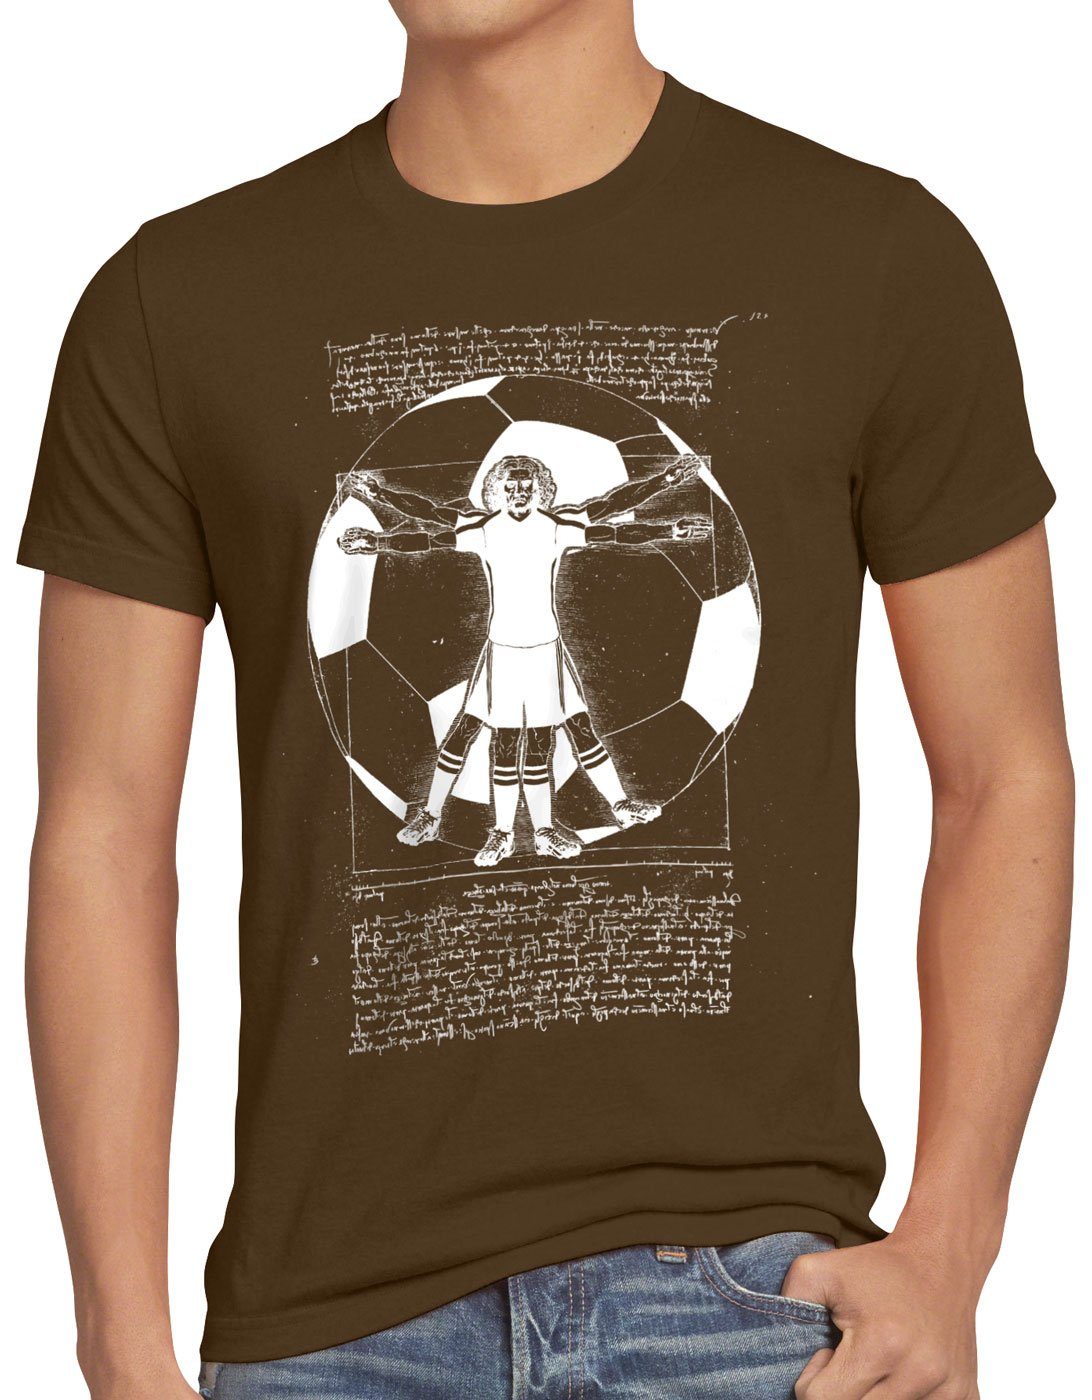 Print-Shirt Herren Vitruvianischer mannschaft braun Fußballer T-Shirt spieler style3